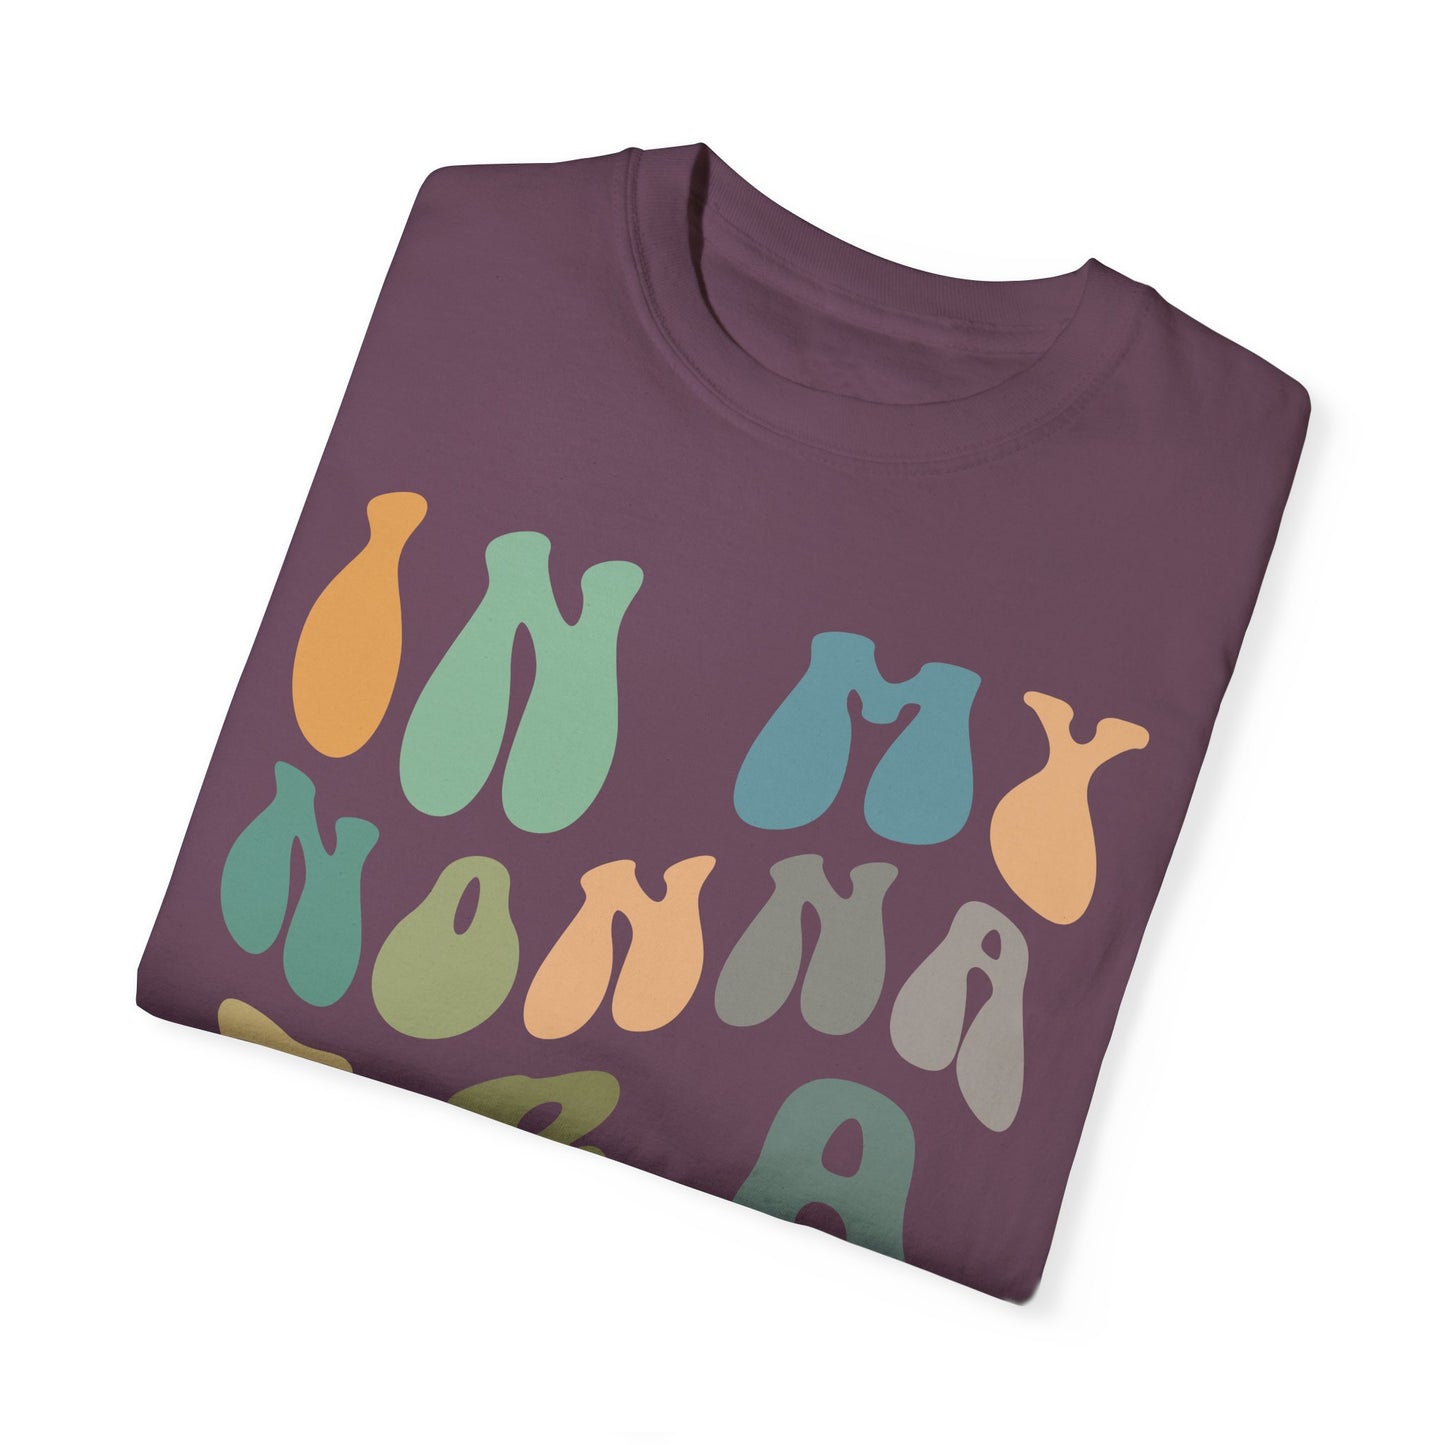 In My Nonna Era Shirt, Nonna Shirt, Best Nonna Shirt from Grandchildren, Gift for Best Nonna, Gifts for Nonna, Comfort Colors Shirt, CC982